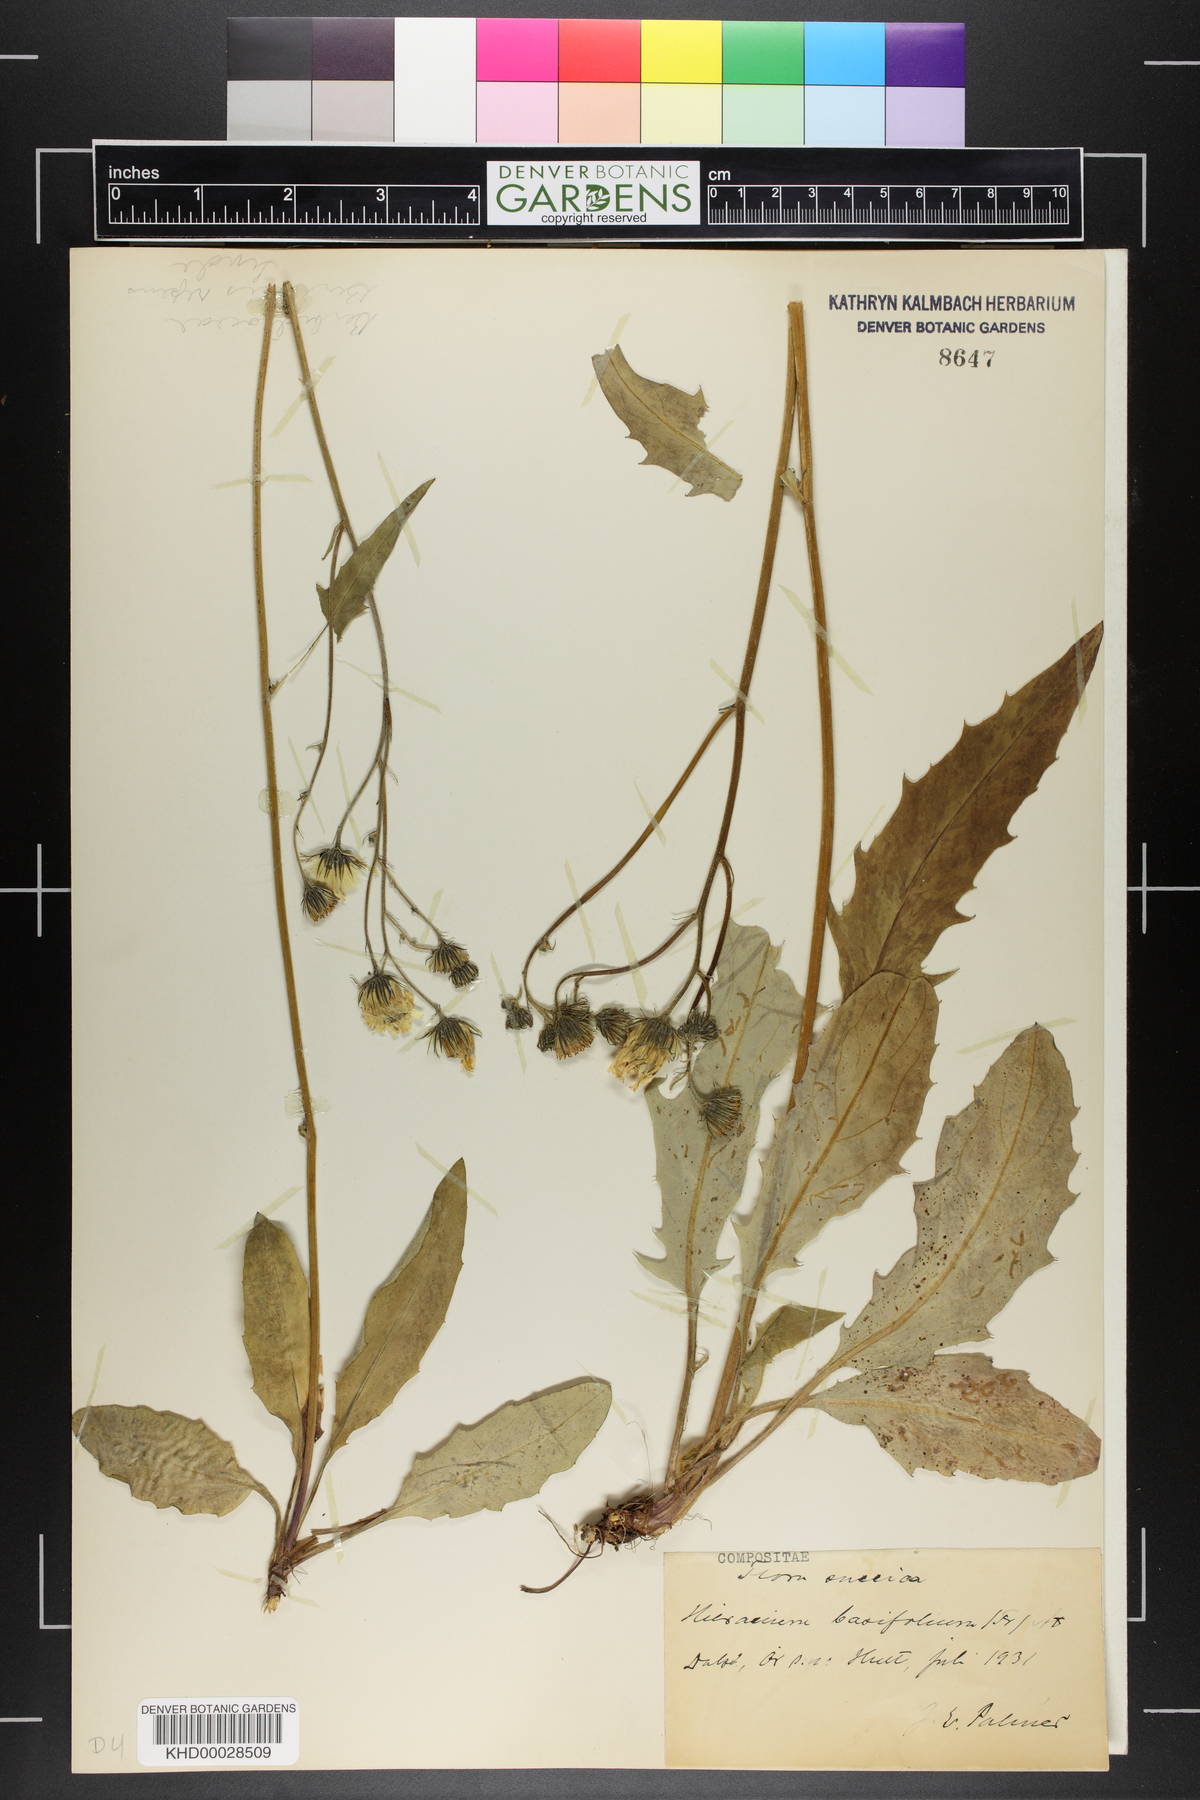 Hieracium caesium subsp. basifolium image